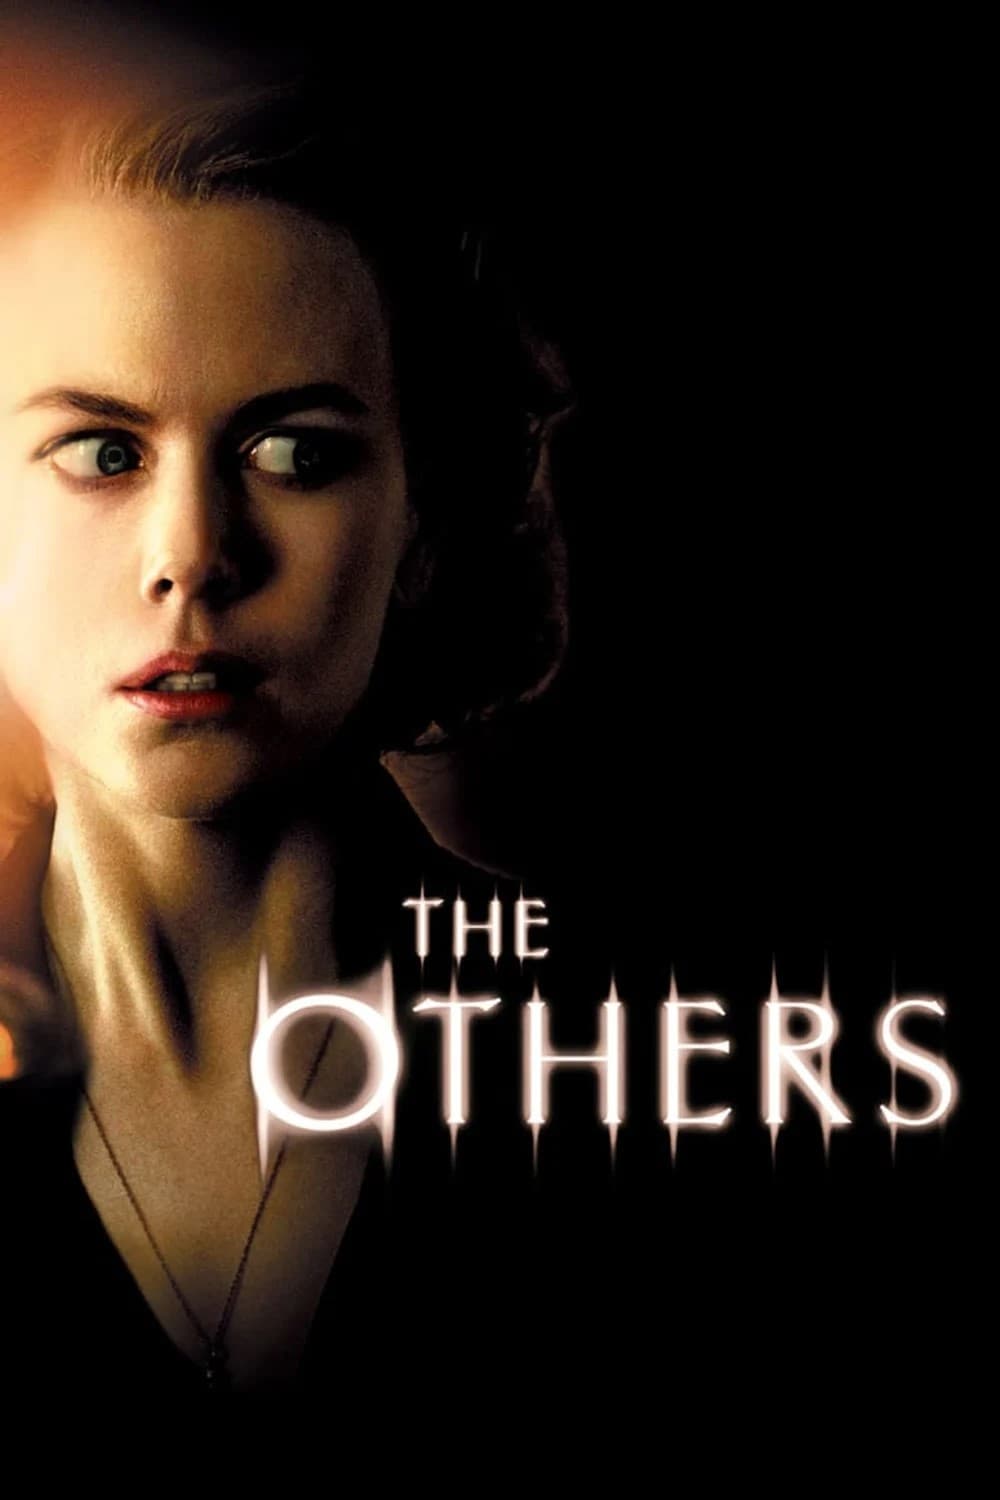 Los otros (2001)